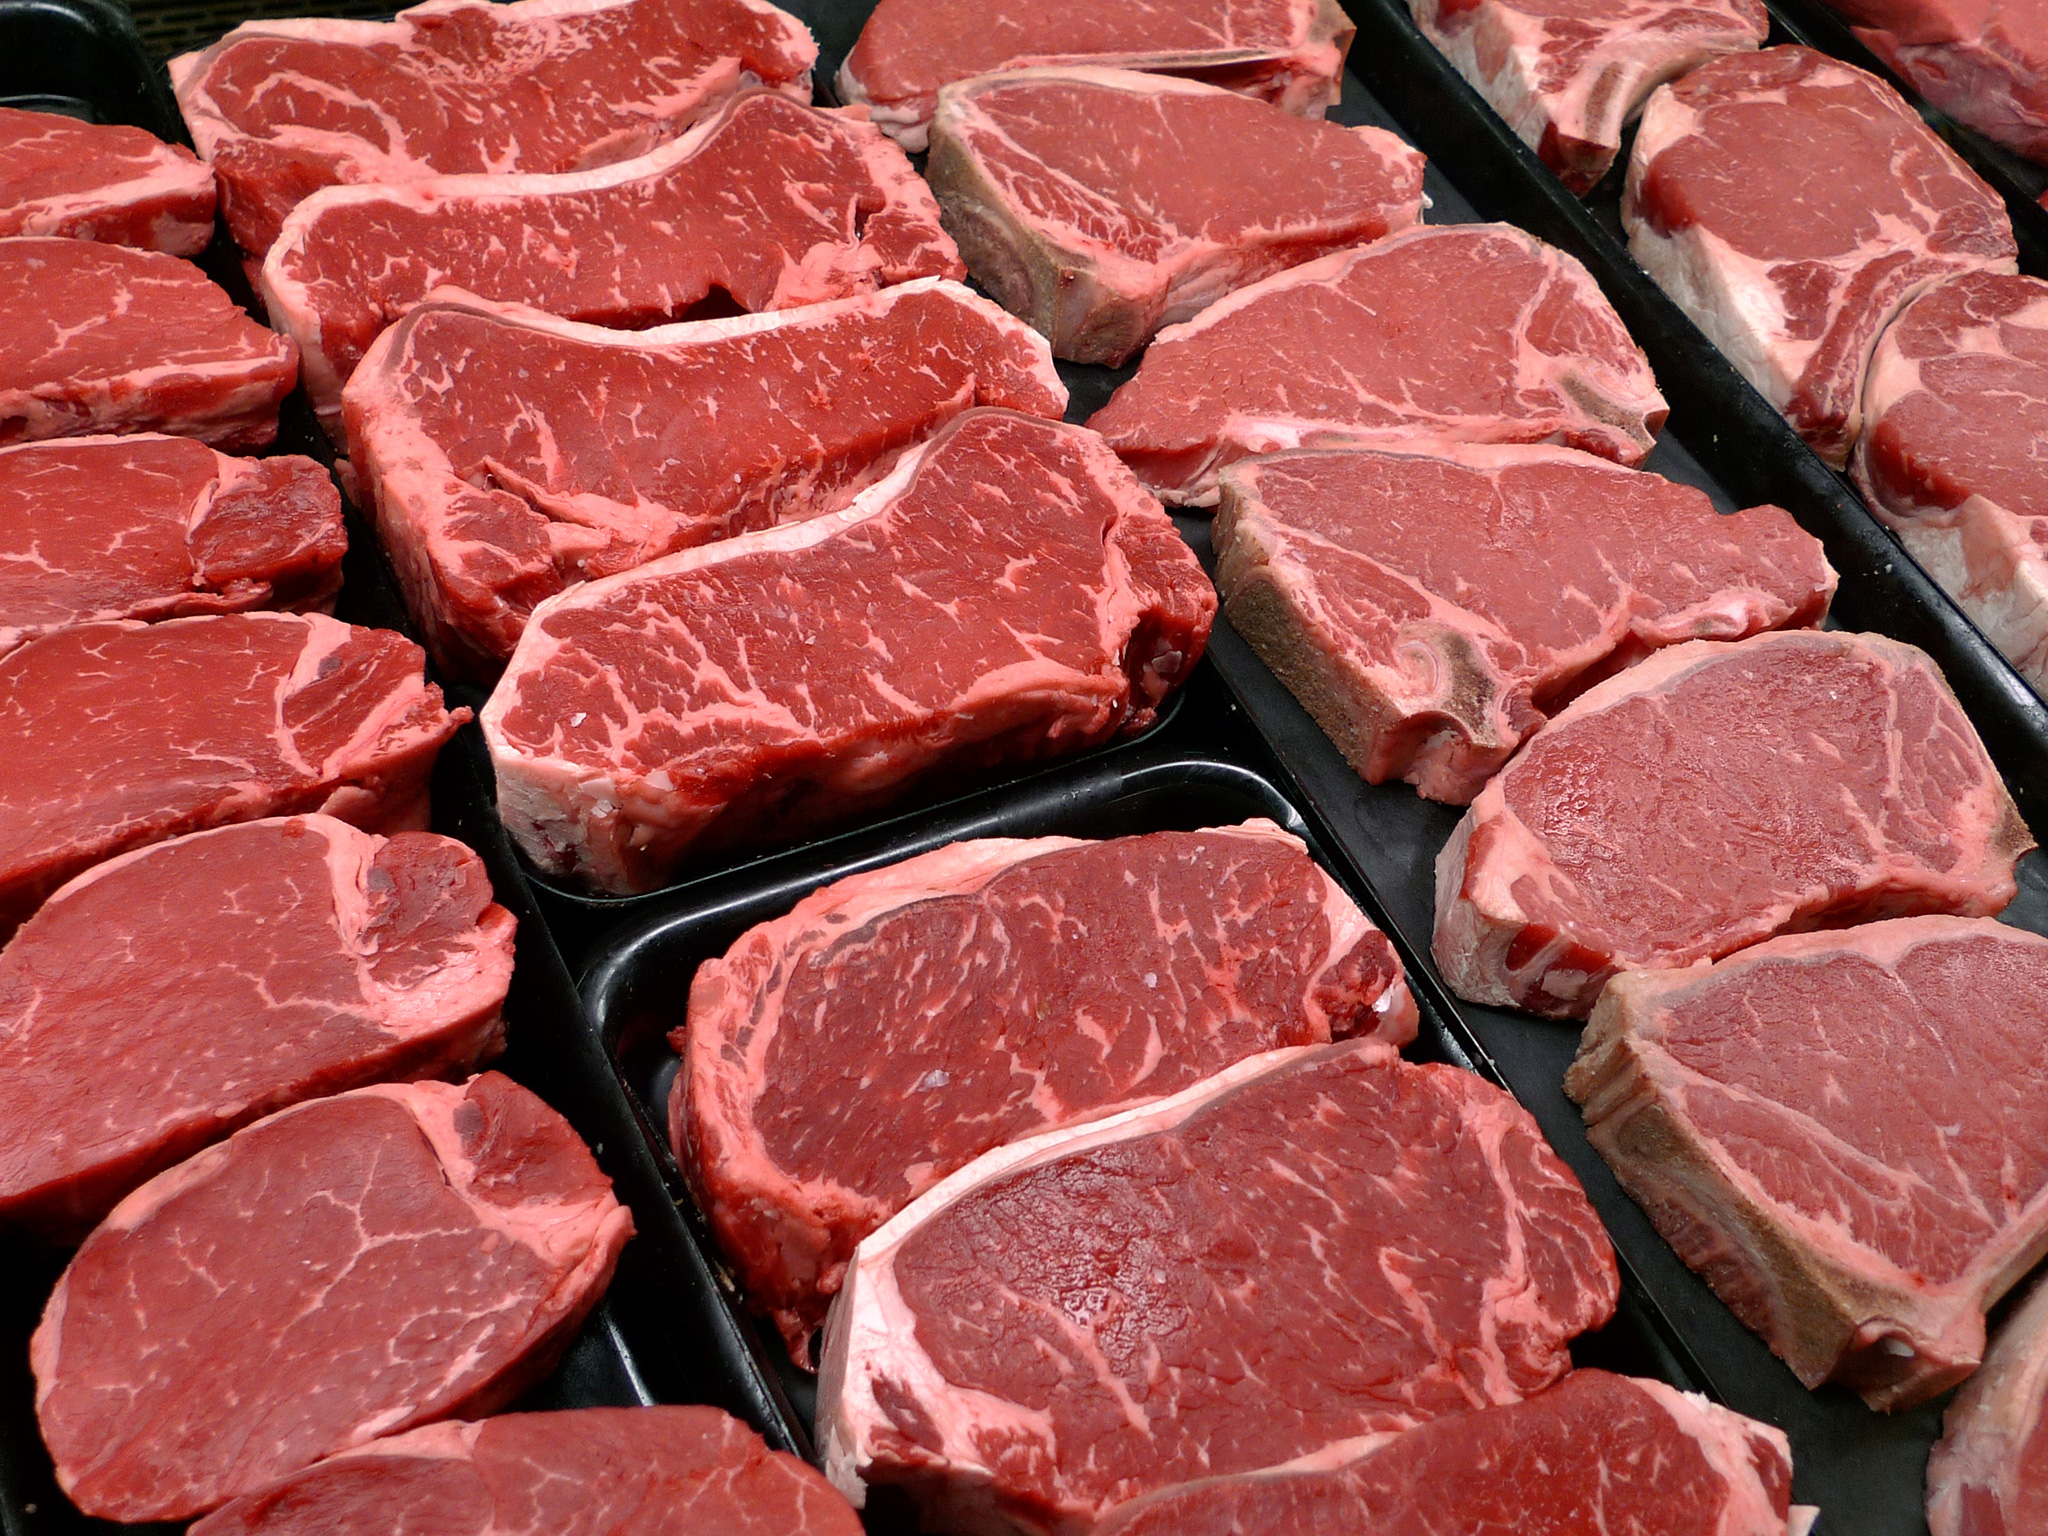 دراسة: بروتينات اللحوم تتسبب في البدانة وليست الدهون